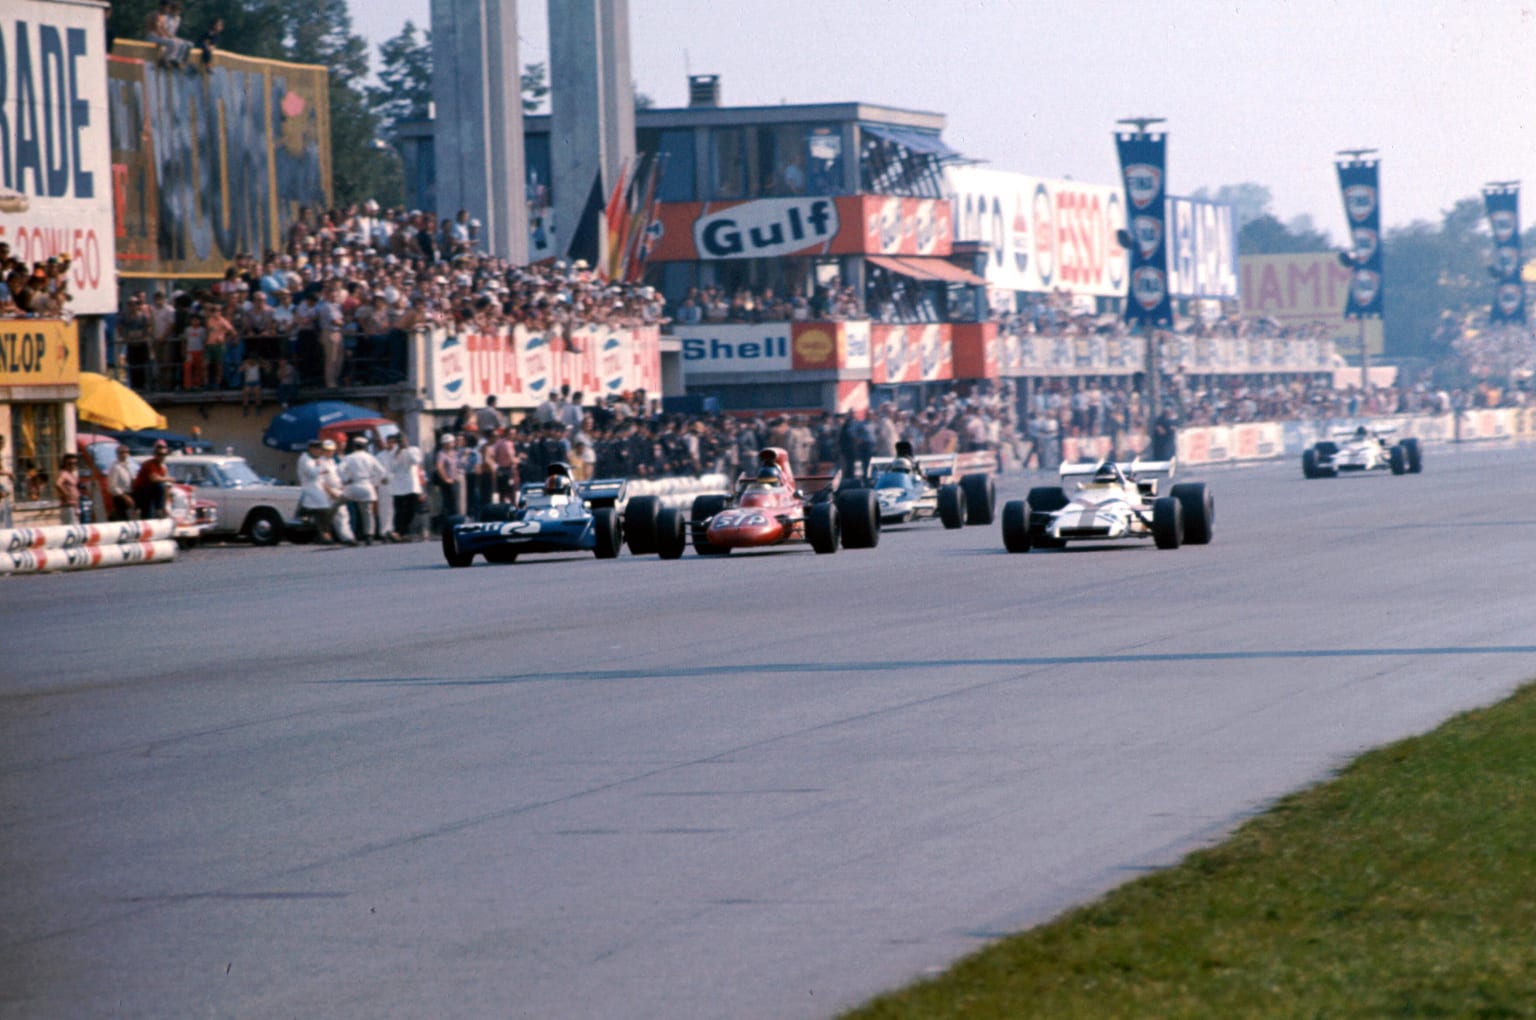 The Italian Grand Prix